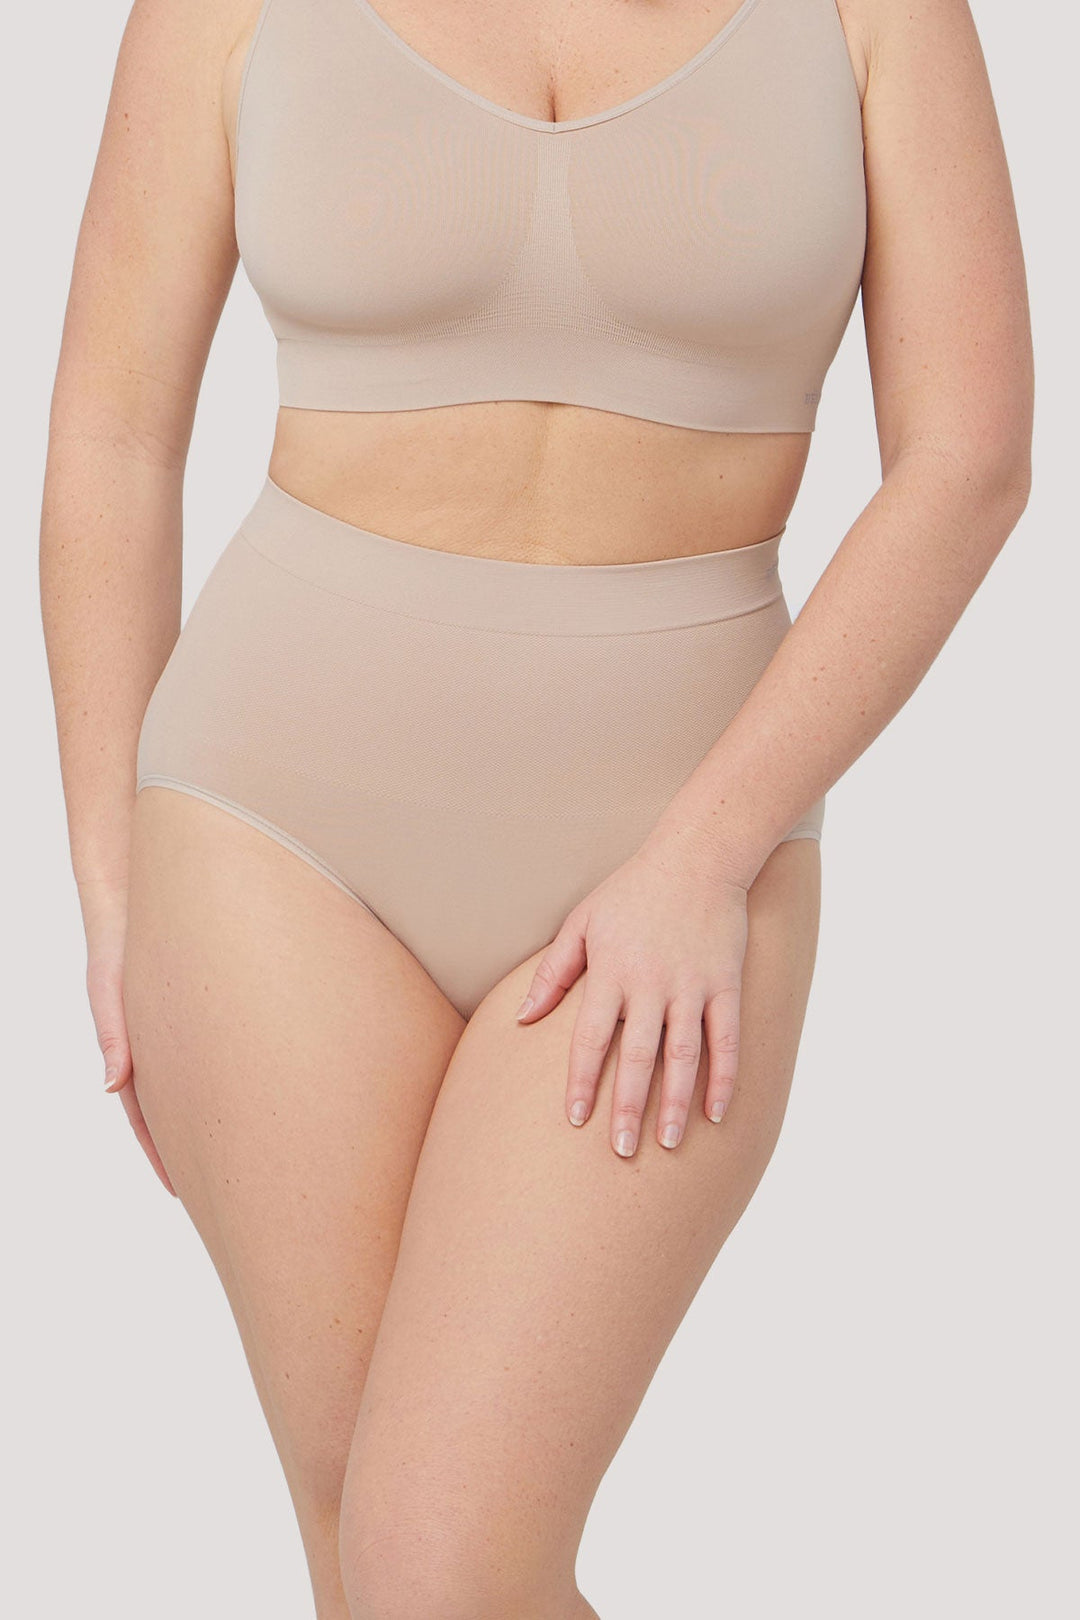 Women's slimming & firming high waist shapewear underwear | Bella Bodies Australia | Sand | Front